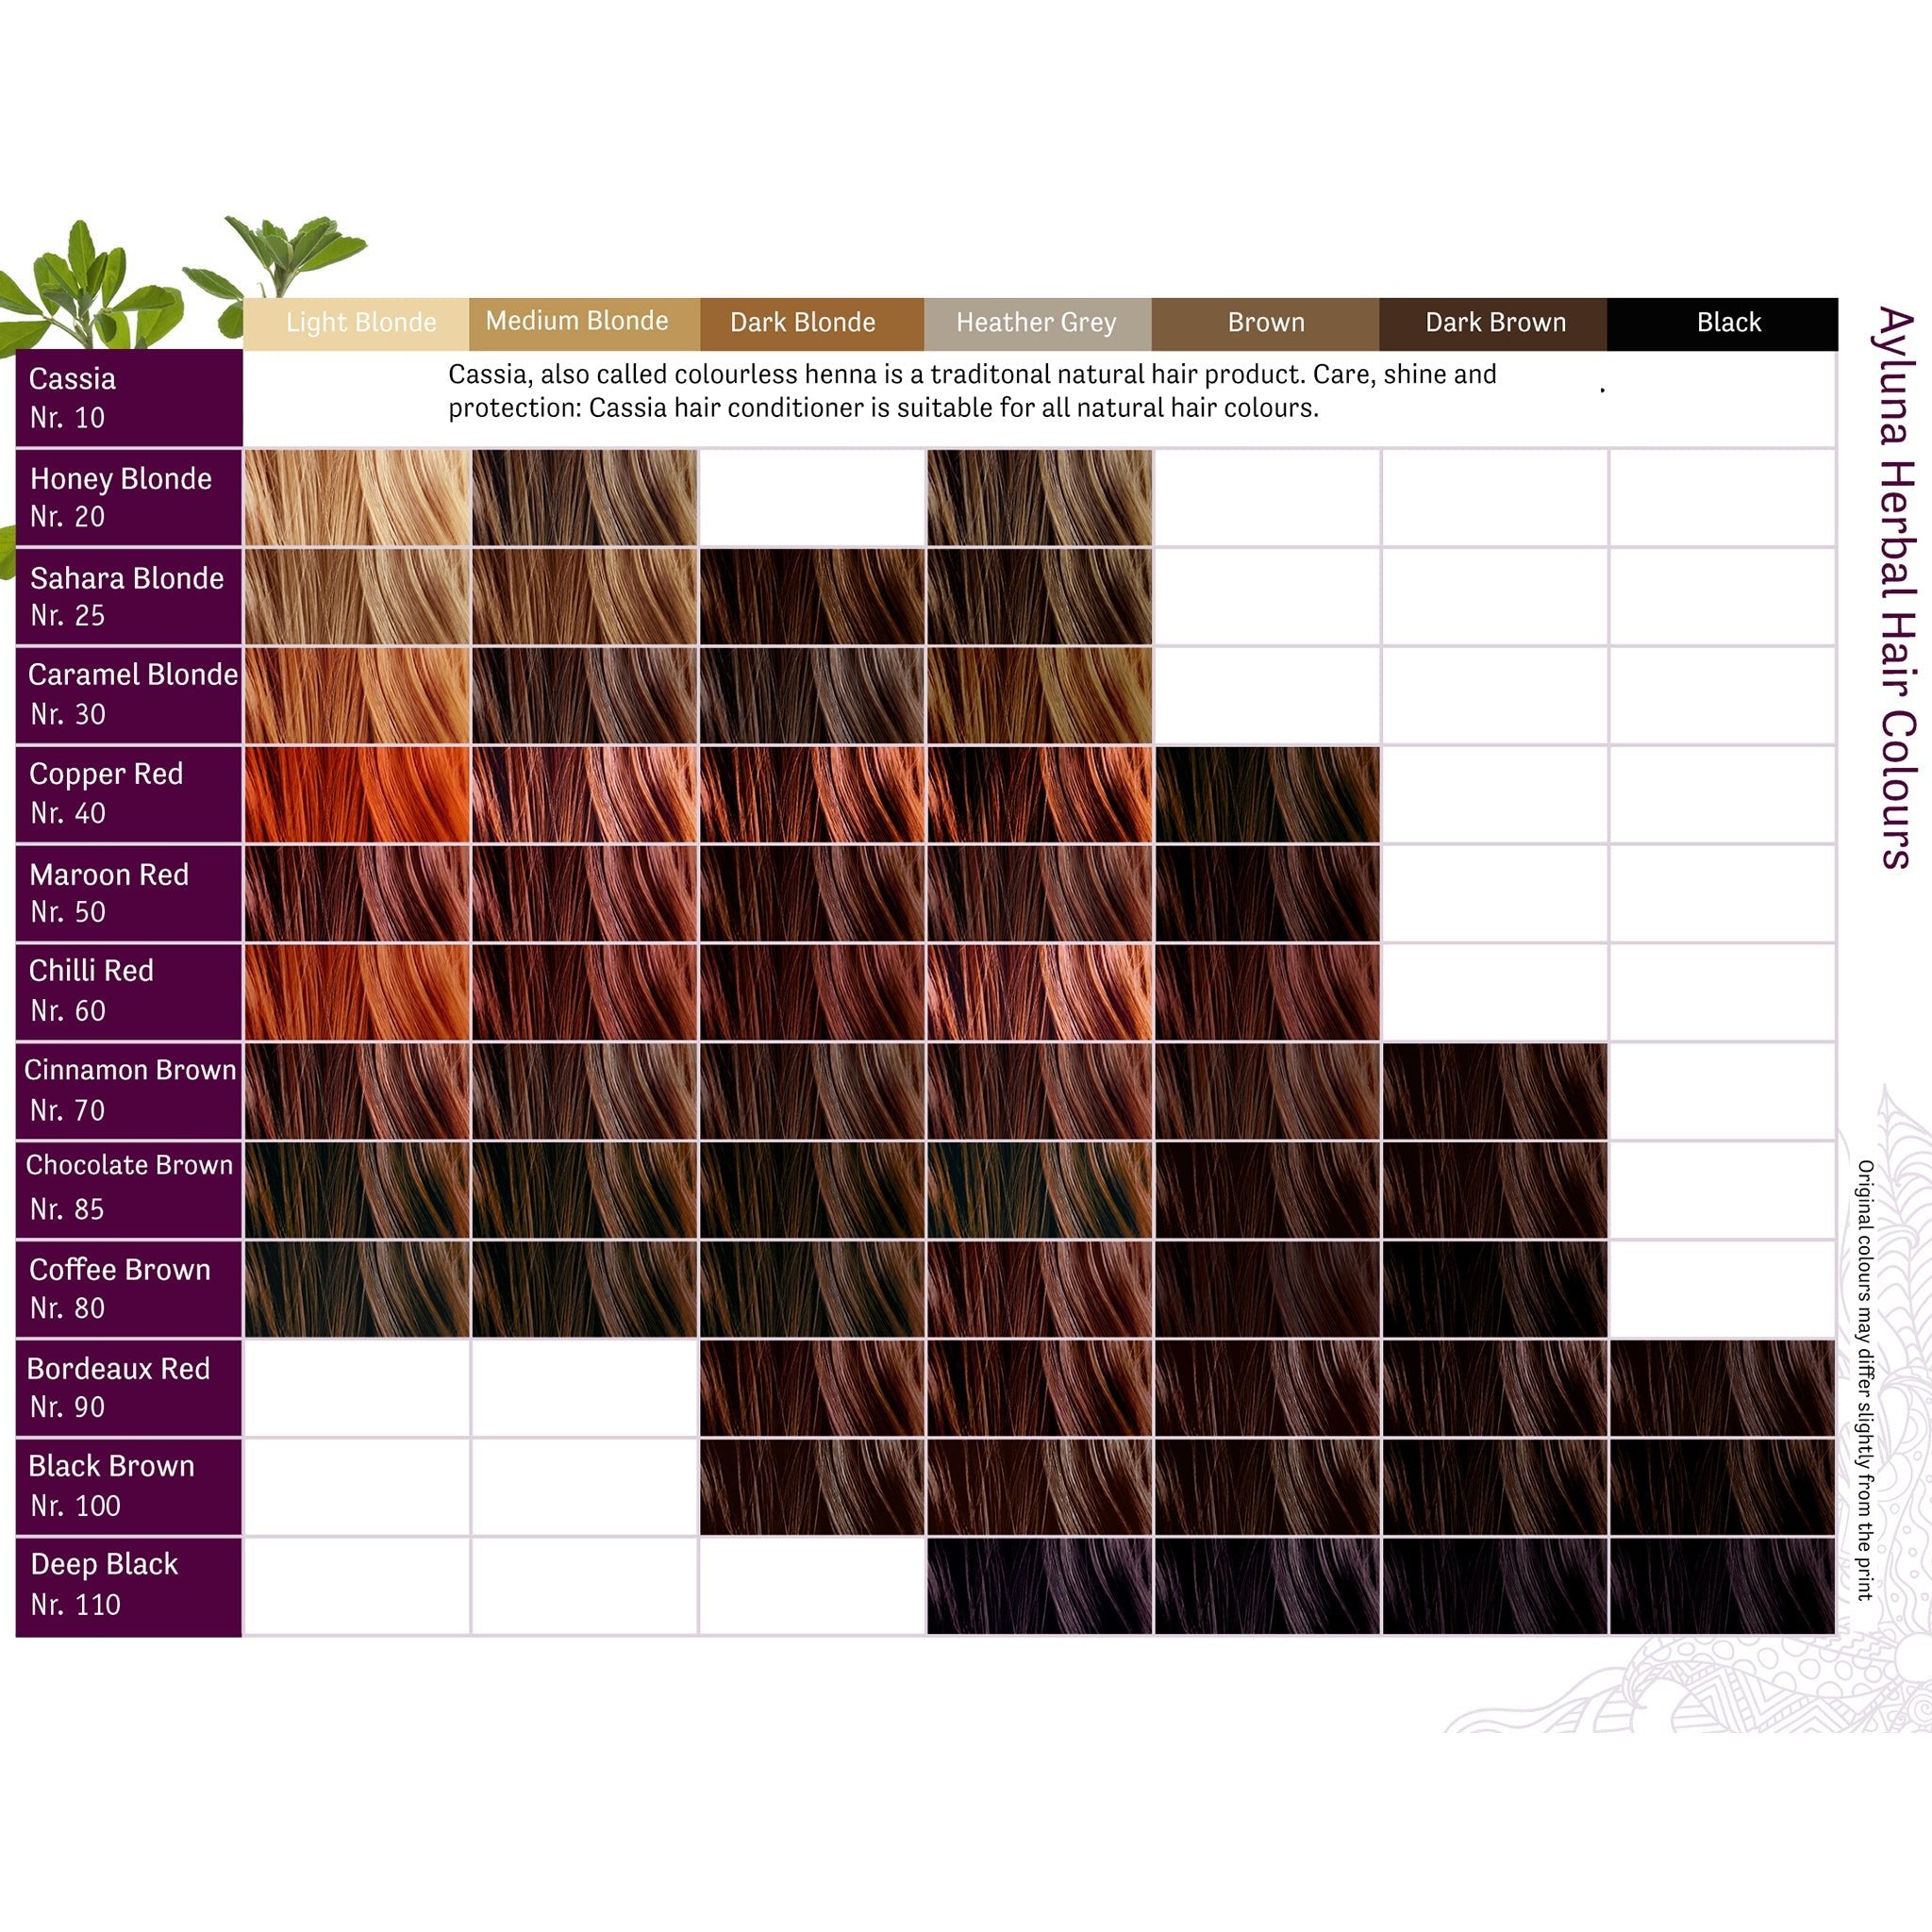 Plant-based Hair Dye - Cinnamon Brown - mypure.co.uk